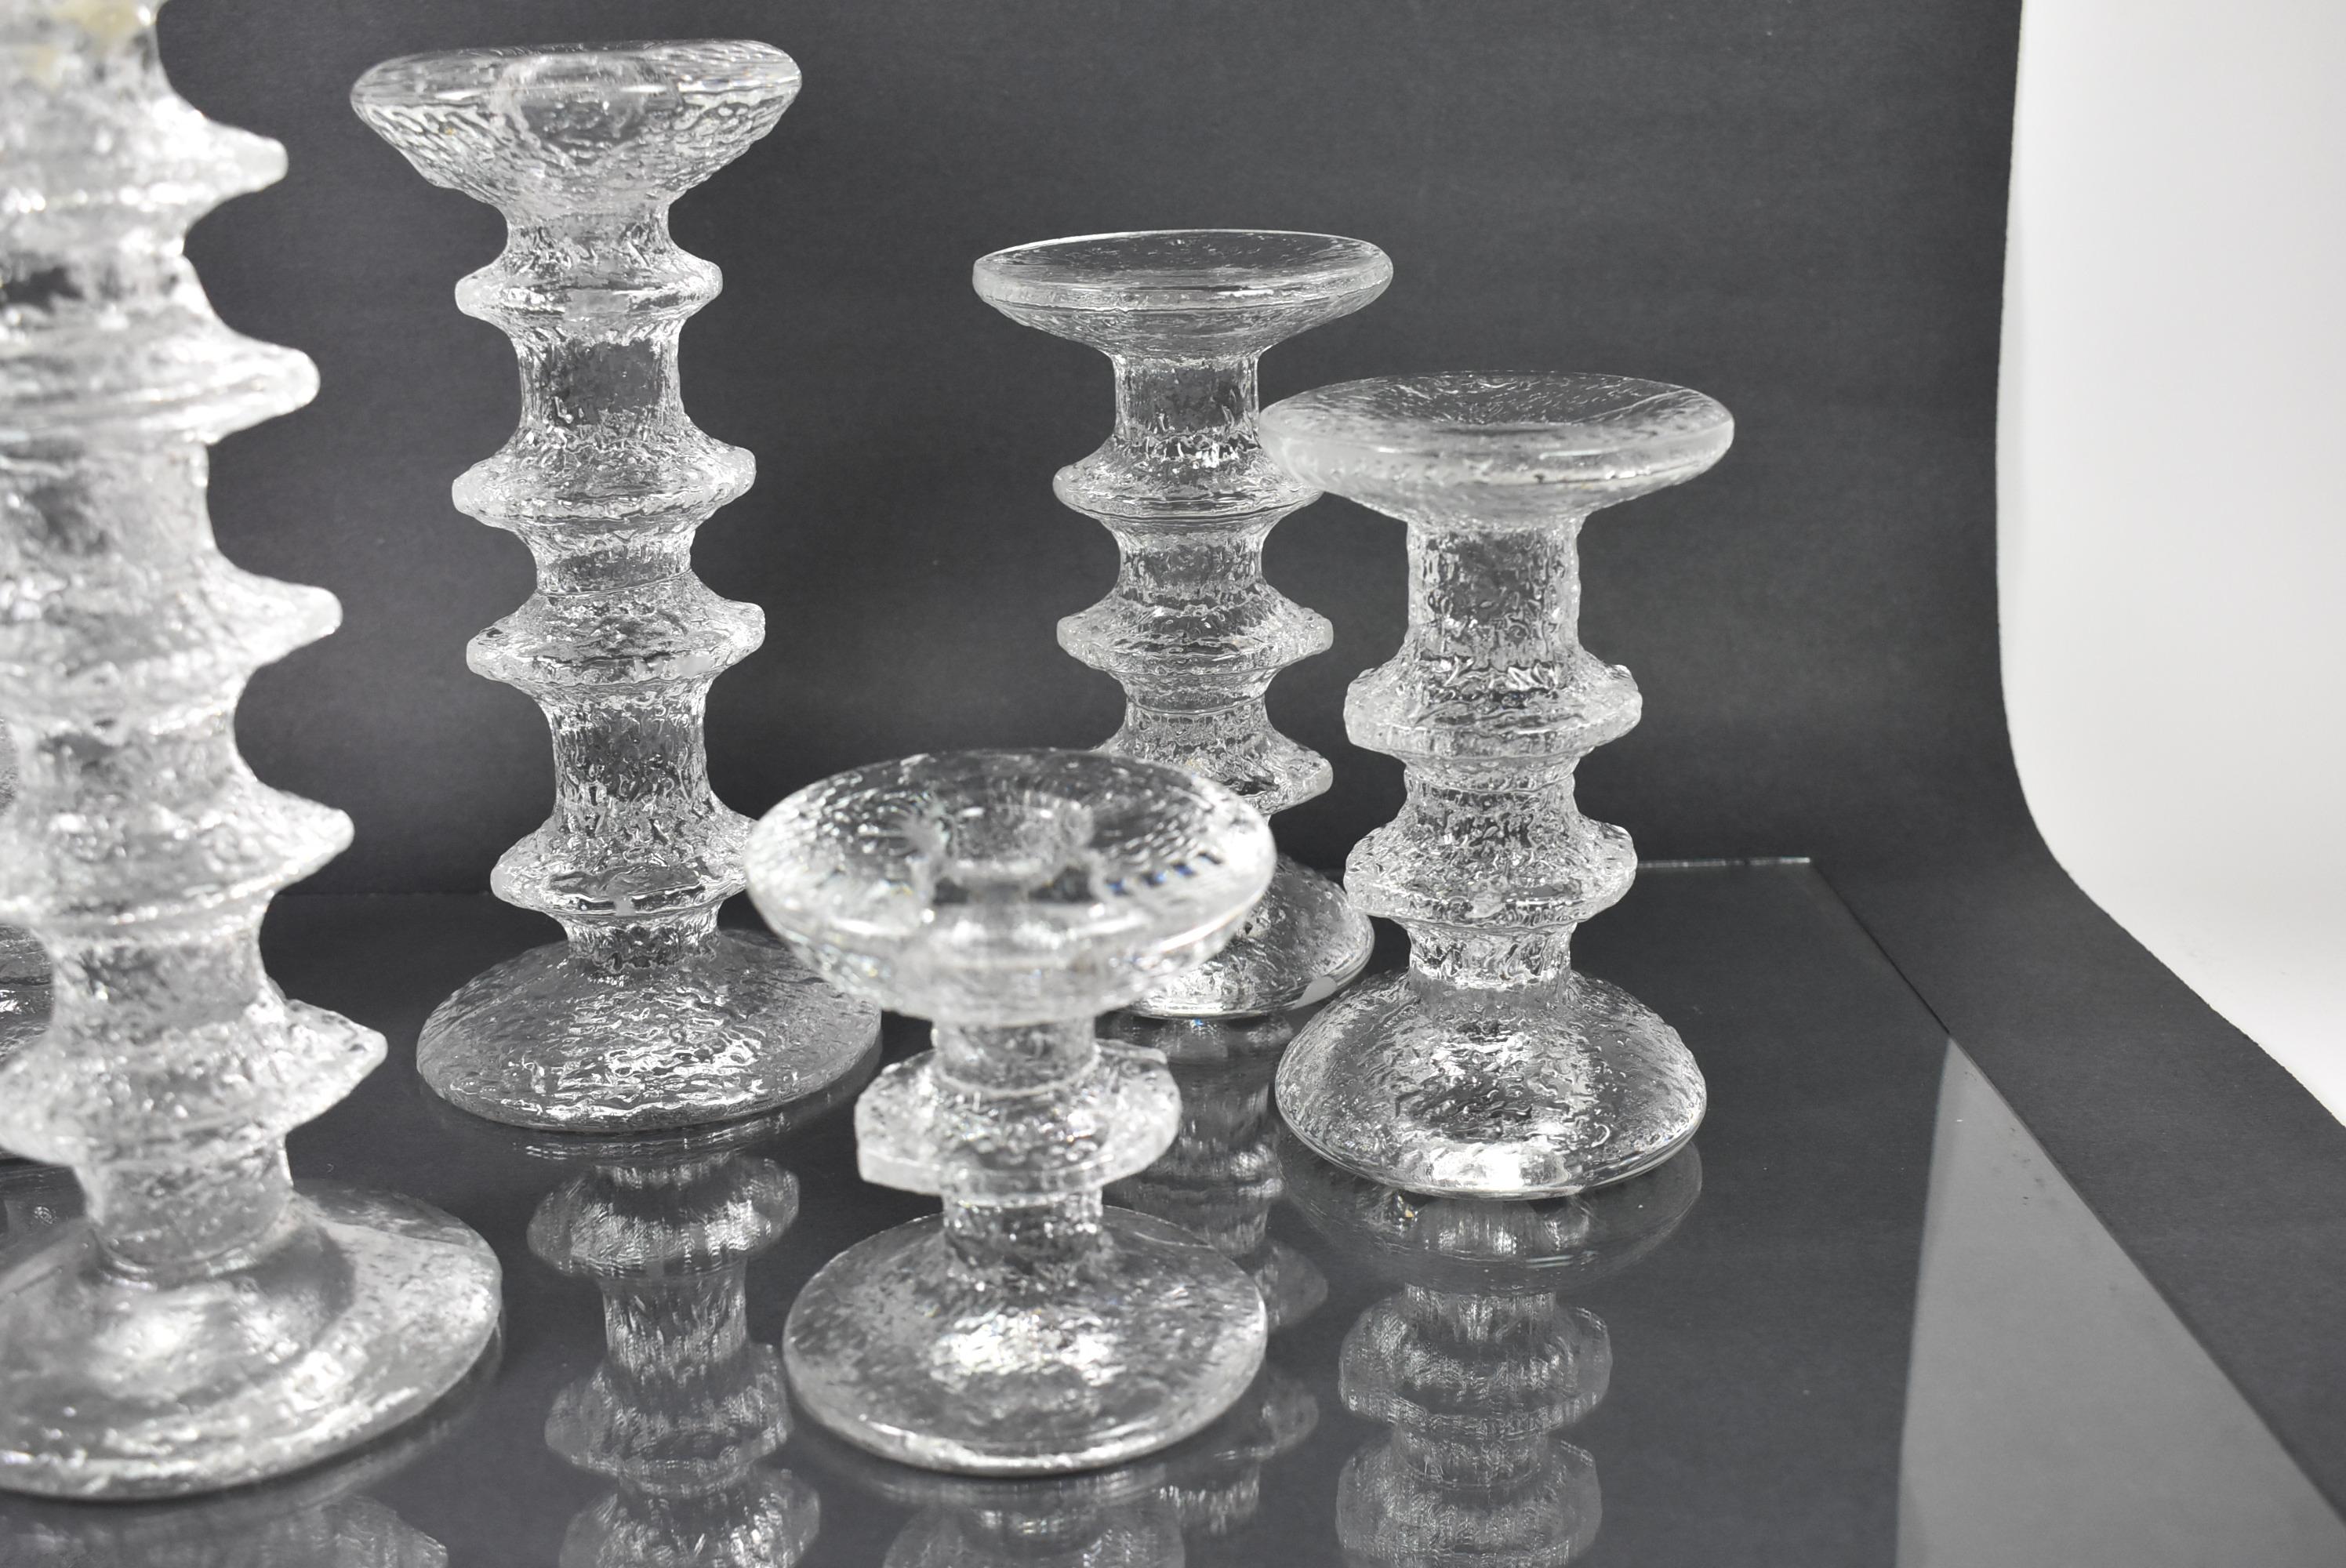 Six chandeliers en verre de taille variable par Timo Sarpaneva 1926-2006. Fait partie de la Collection Festivo de Littala. Les tailles vont de 2,5